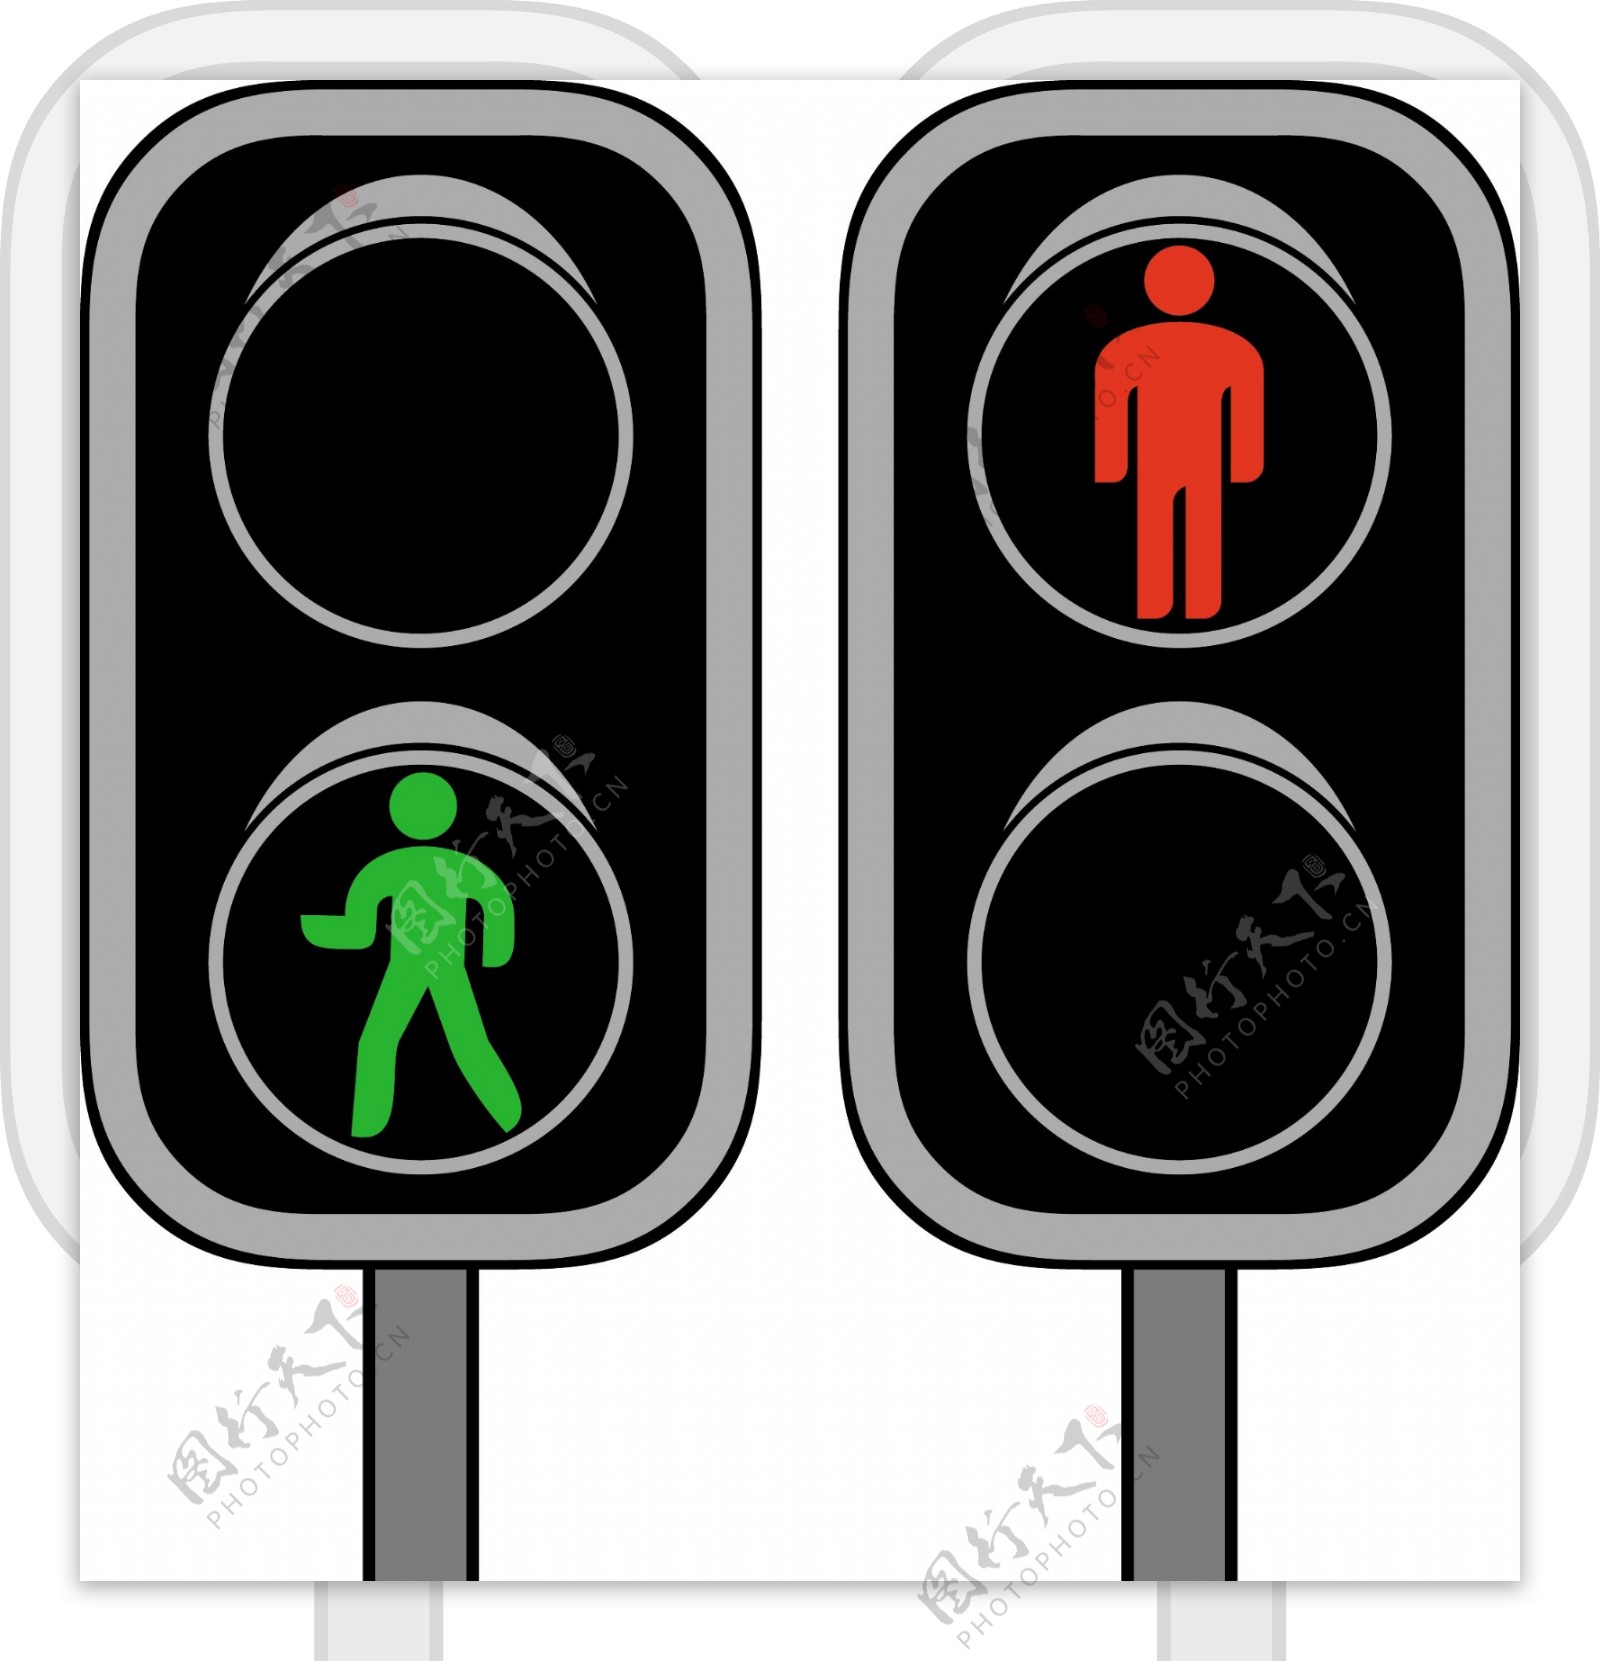 红绿灯交通灯信号灯图片